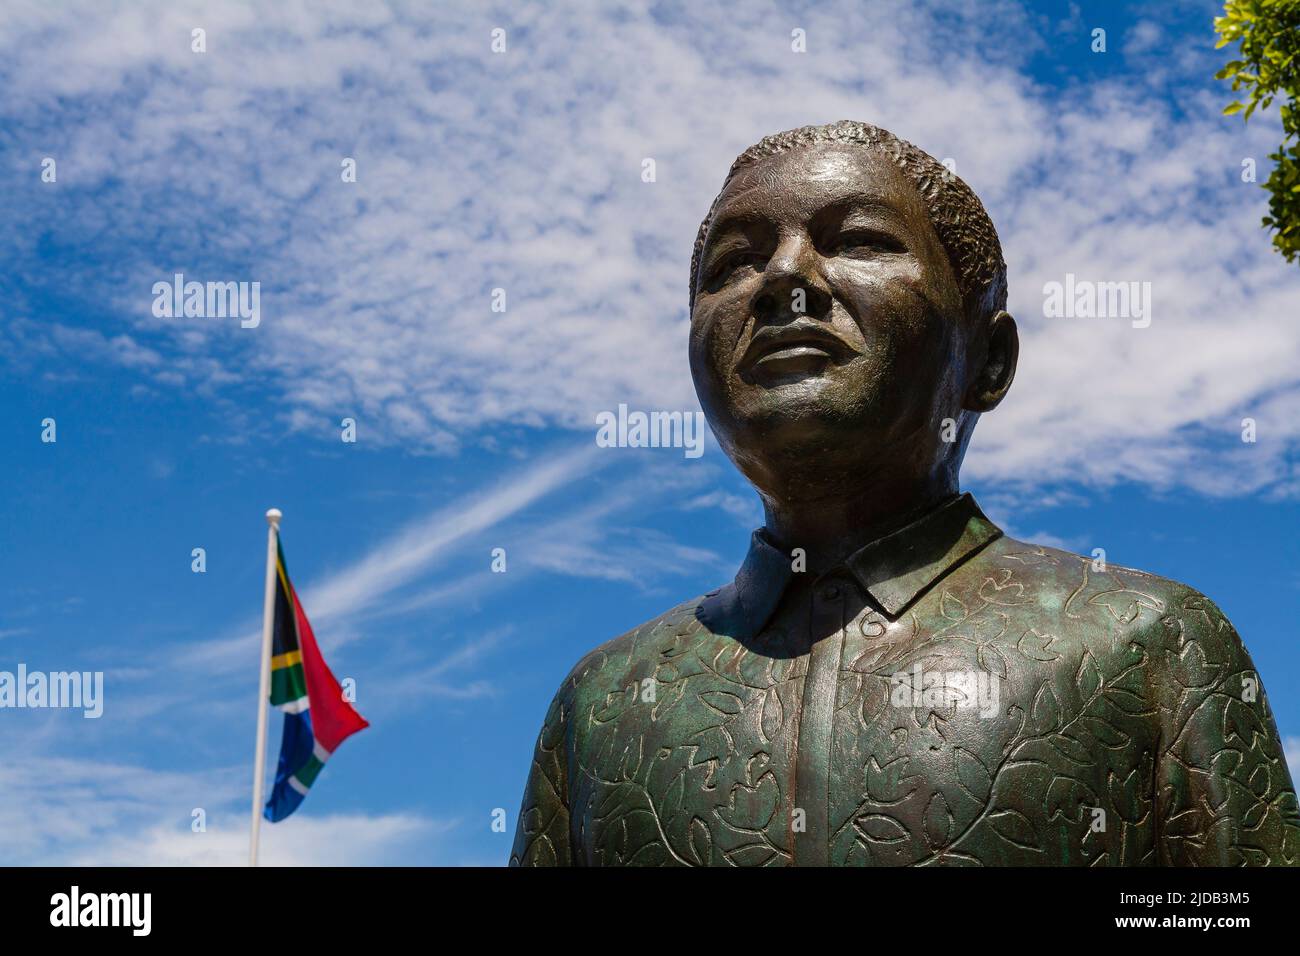 Nahaufnahme der Bronzestatue Nelson Mandela auf dem Noble Square entlang der Victoria und Alfred Waterfront mit der südafrikanischen Flagge, die gegen einen ... Stockfoto